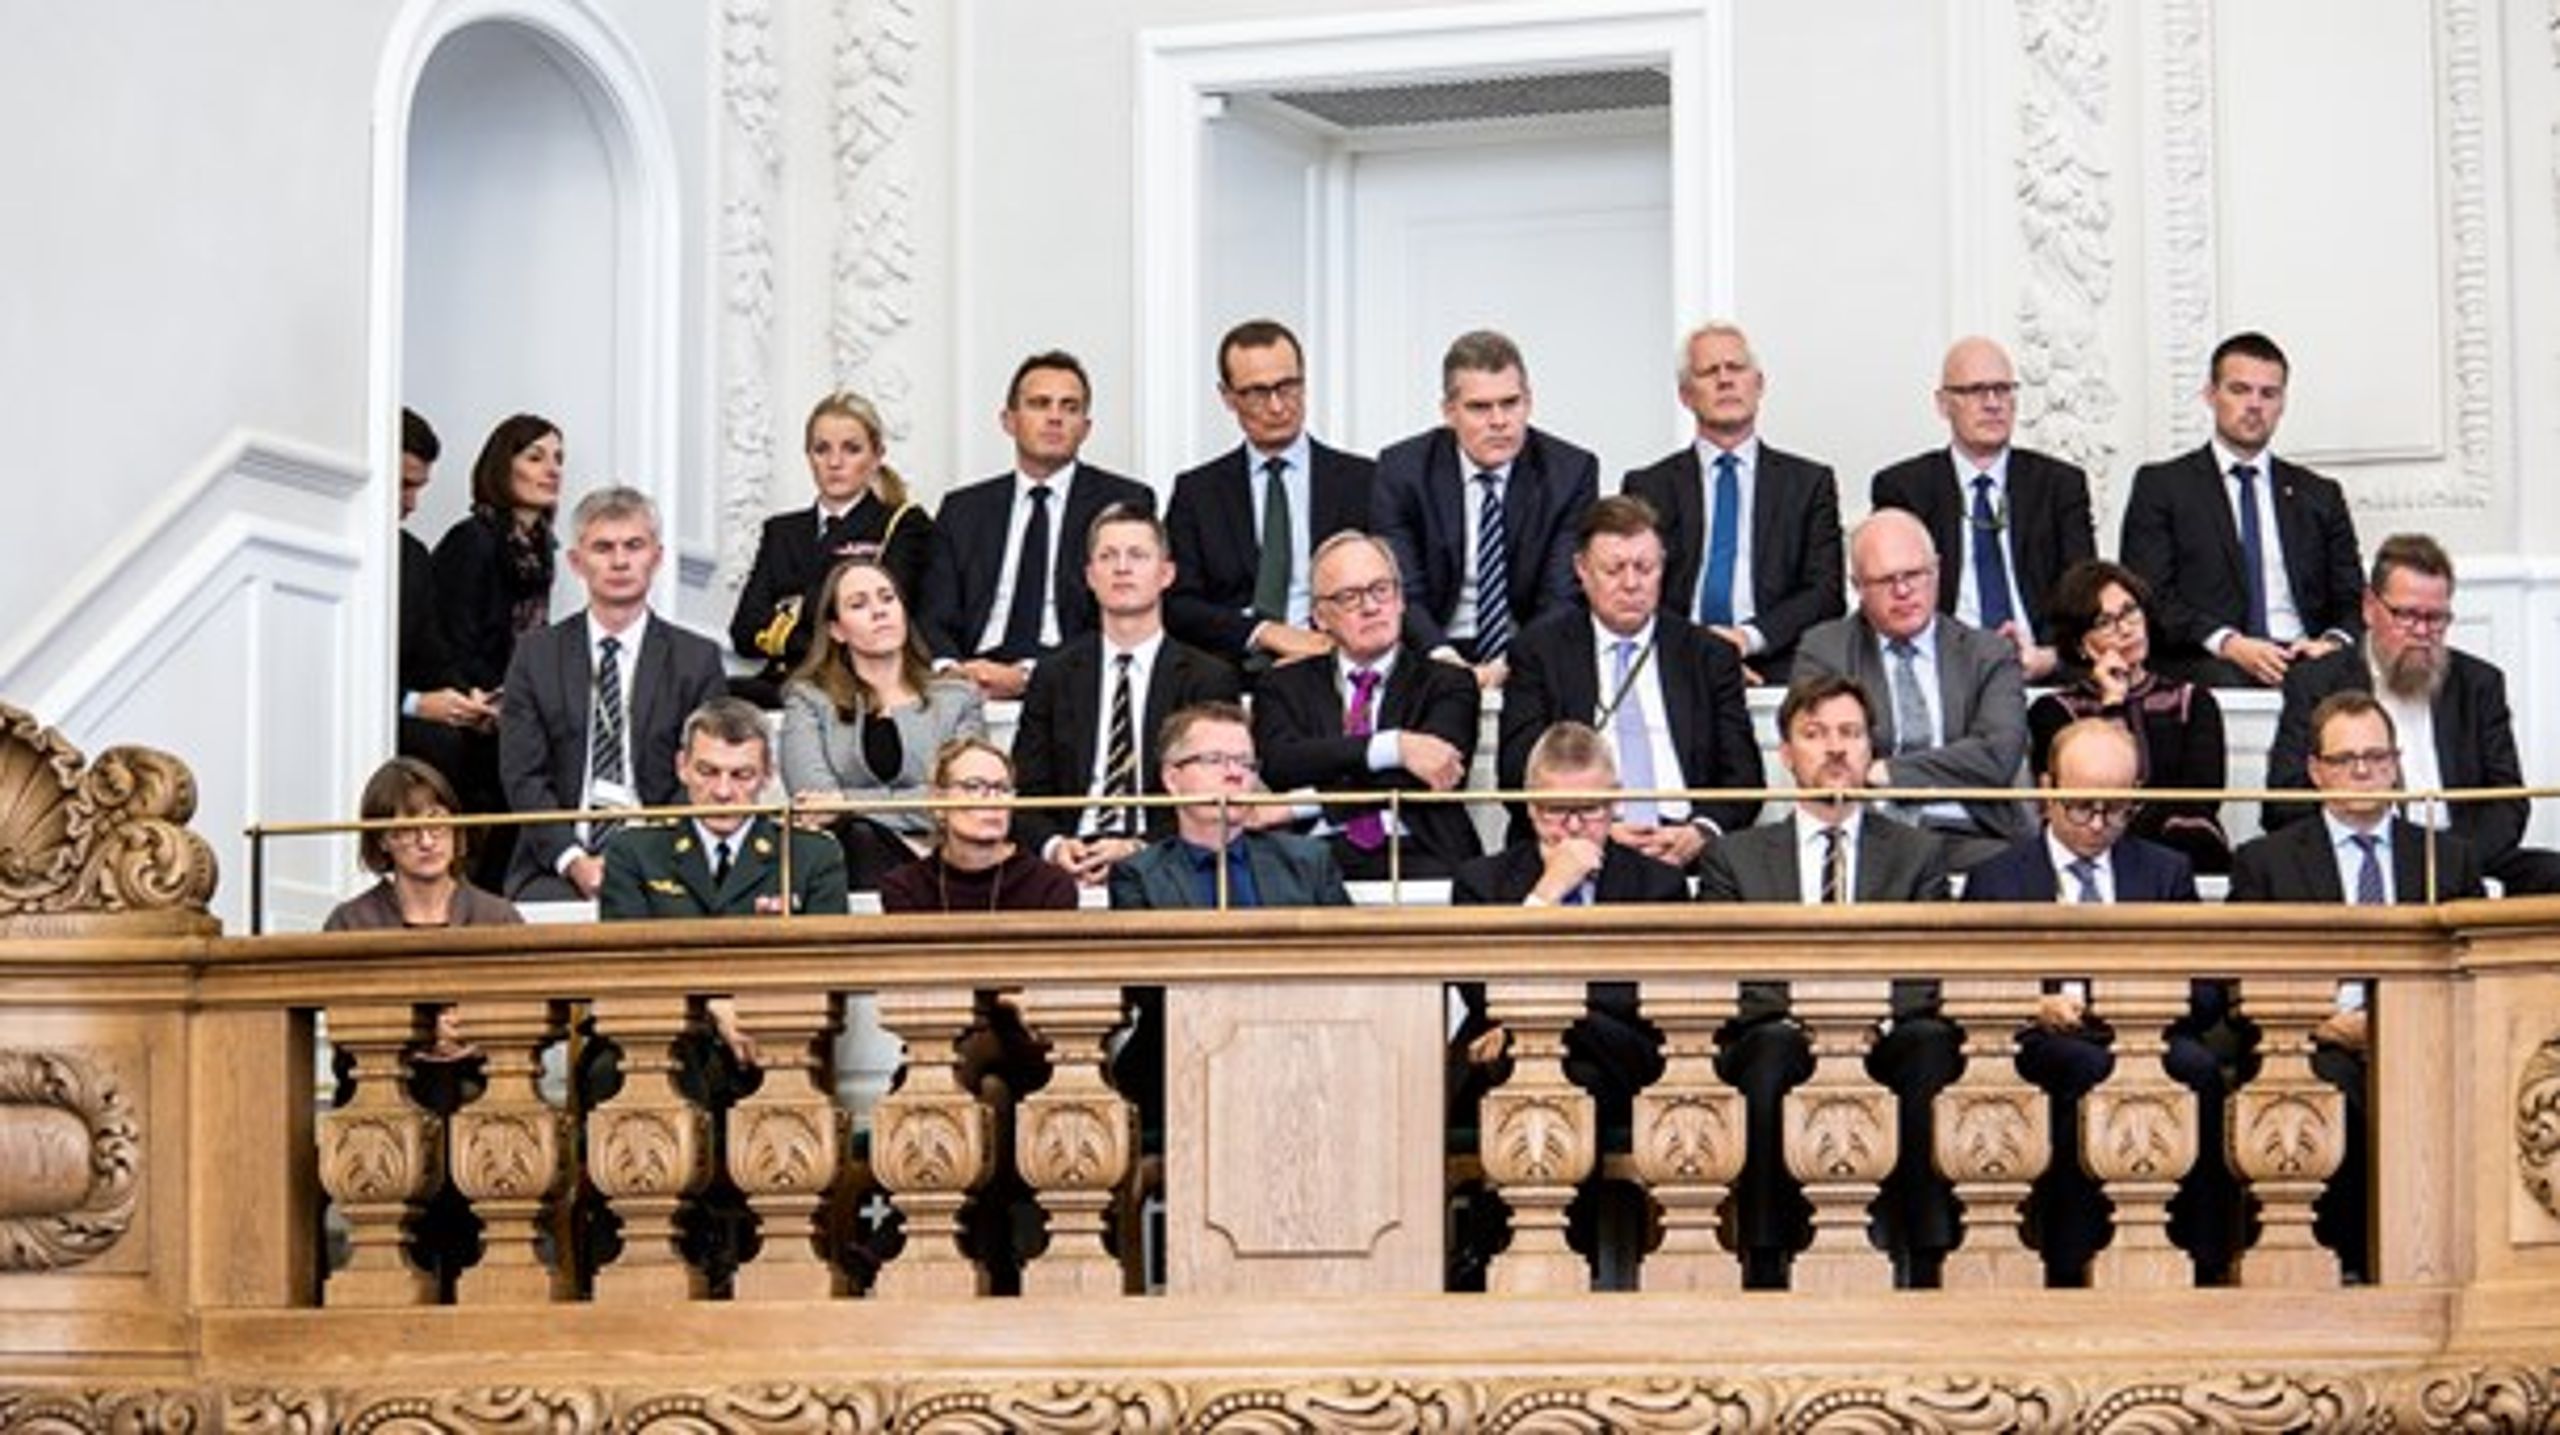 Departementscheferne til åbning af Folketinget 2016.